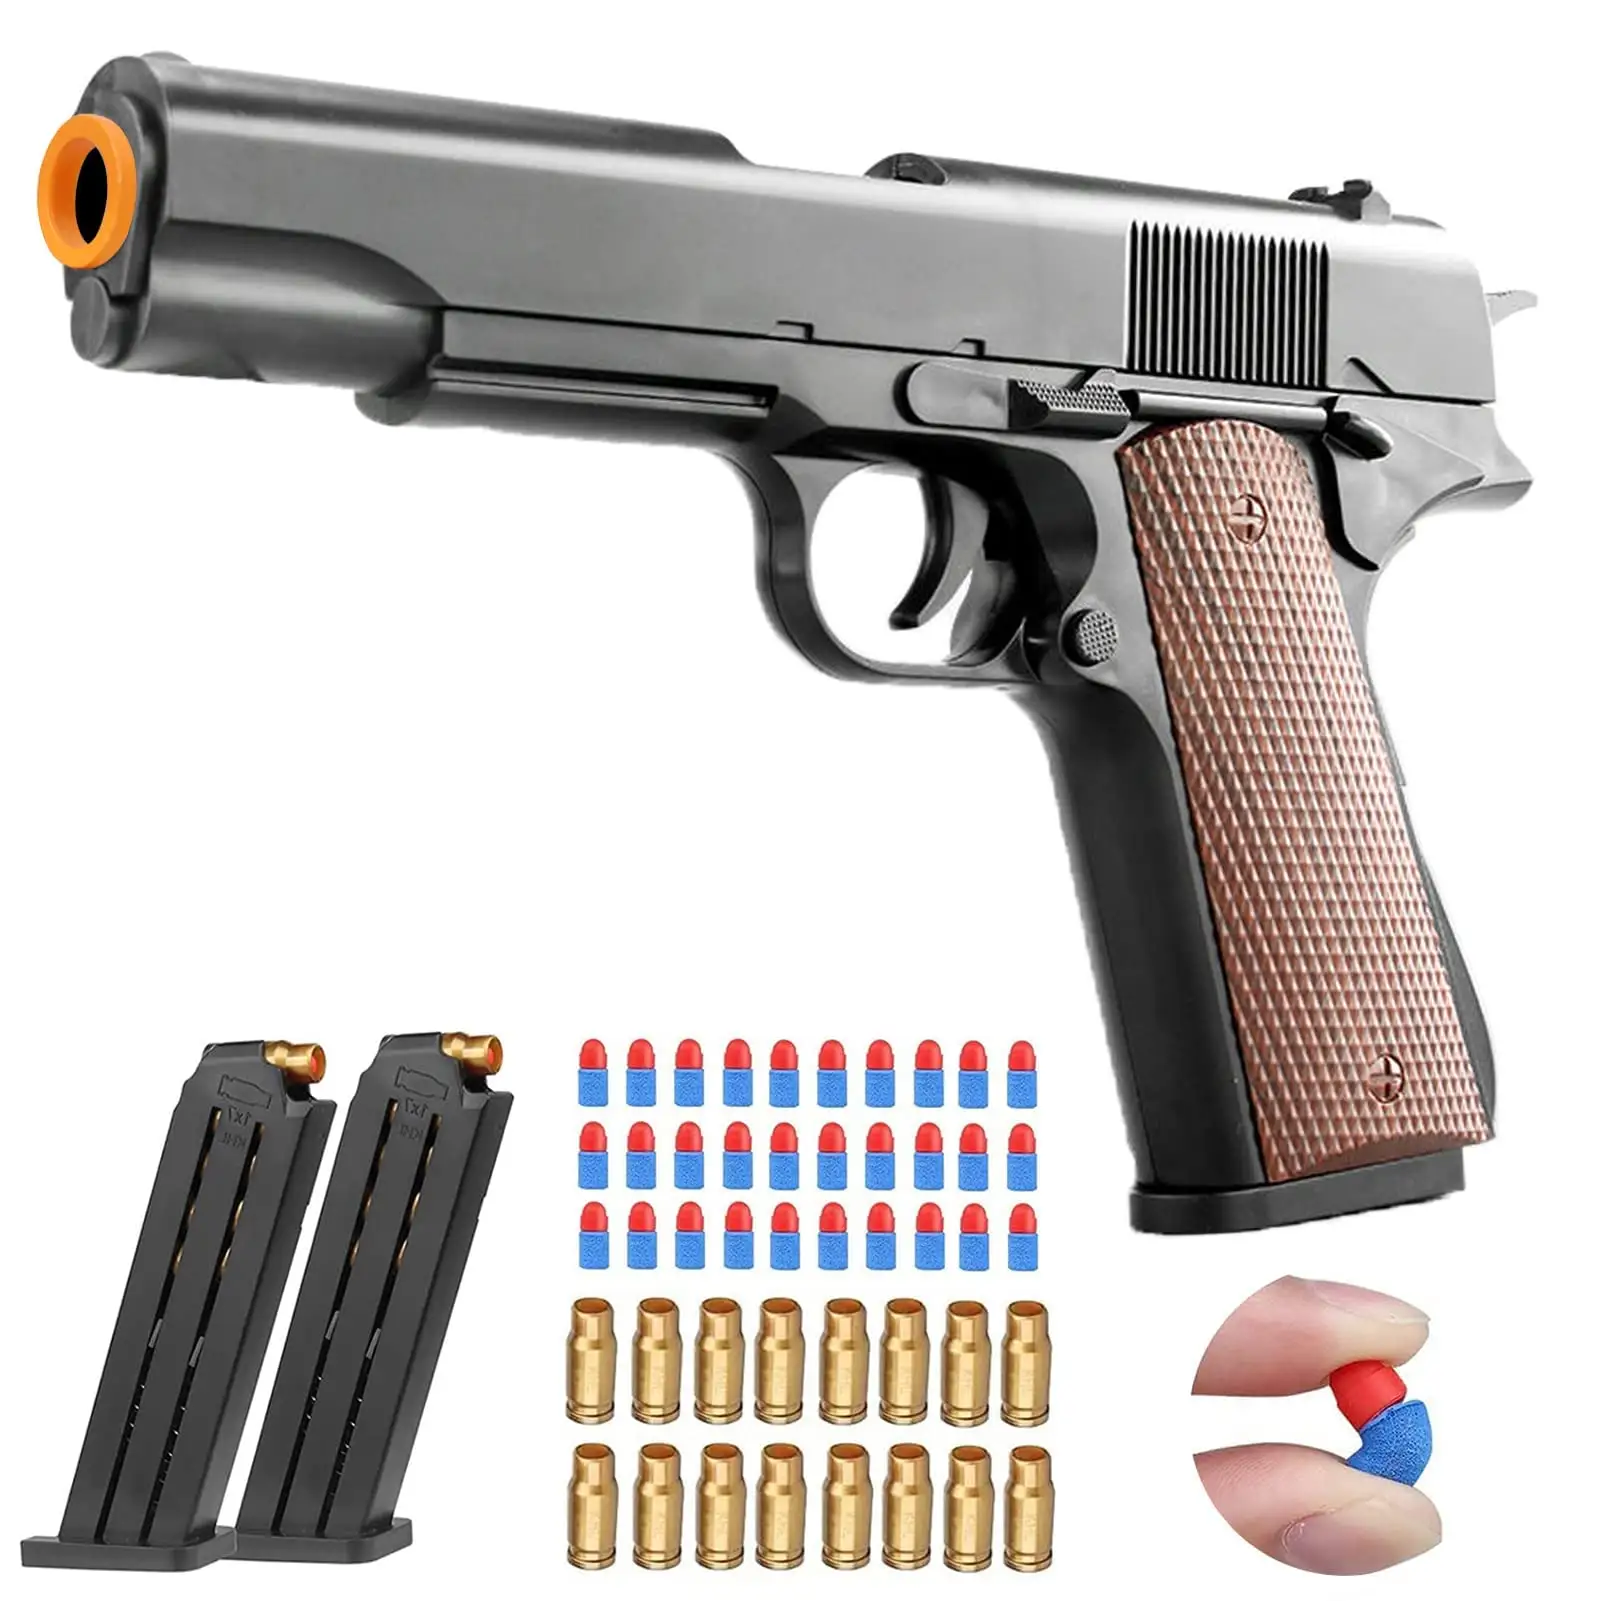 Лидер продаж, Рождественский подарок на день рождения, рубанная оболочка, пластиковый игрушечный пистолет M1911 G-lock, безопасный экологичный мягкий пулемет для мальчиков, уличная игрушка